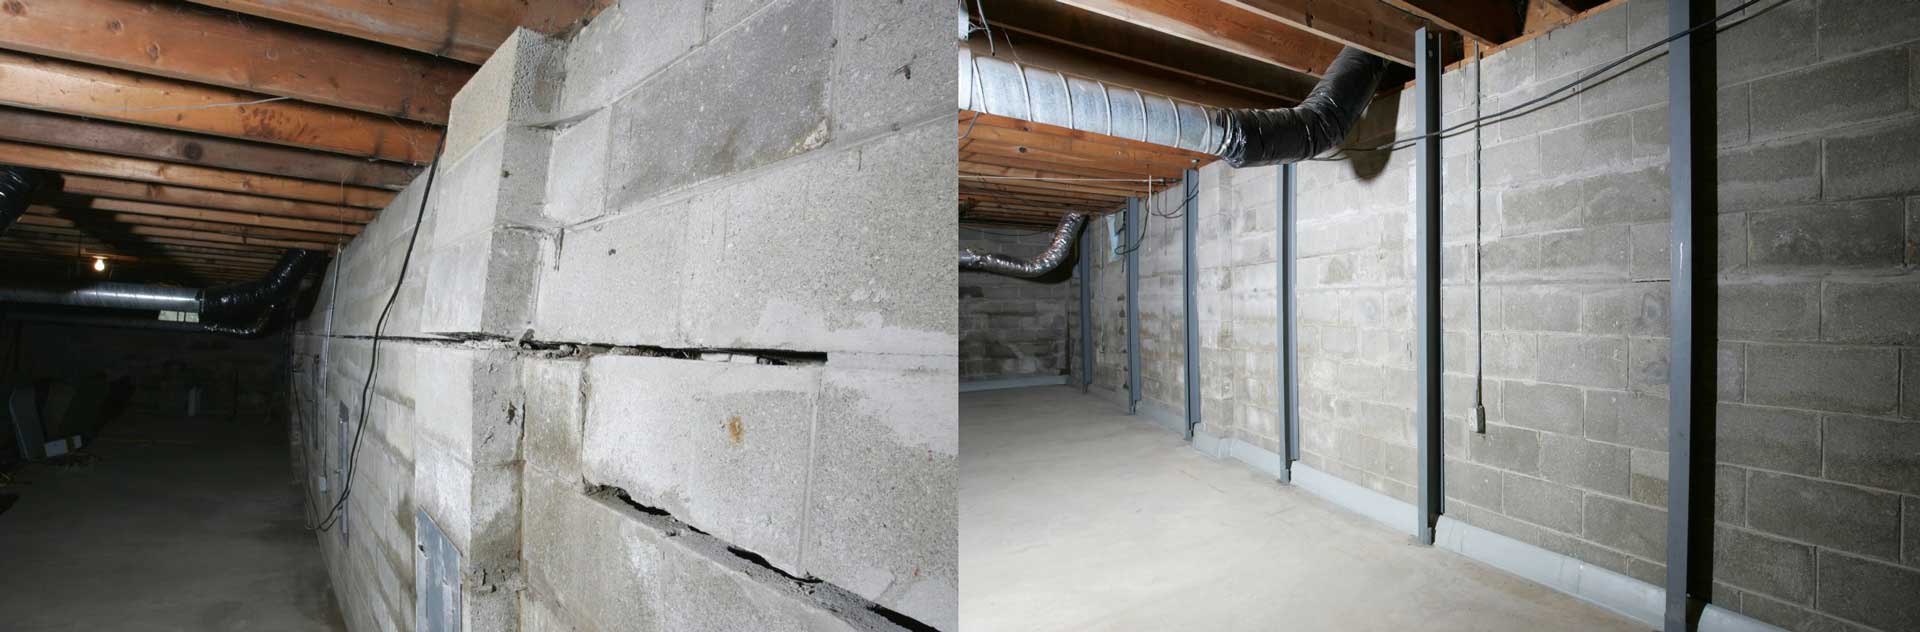 Basement Walls Repair